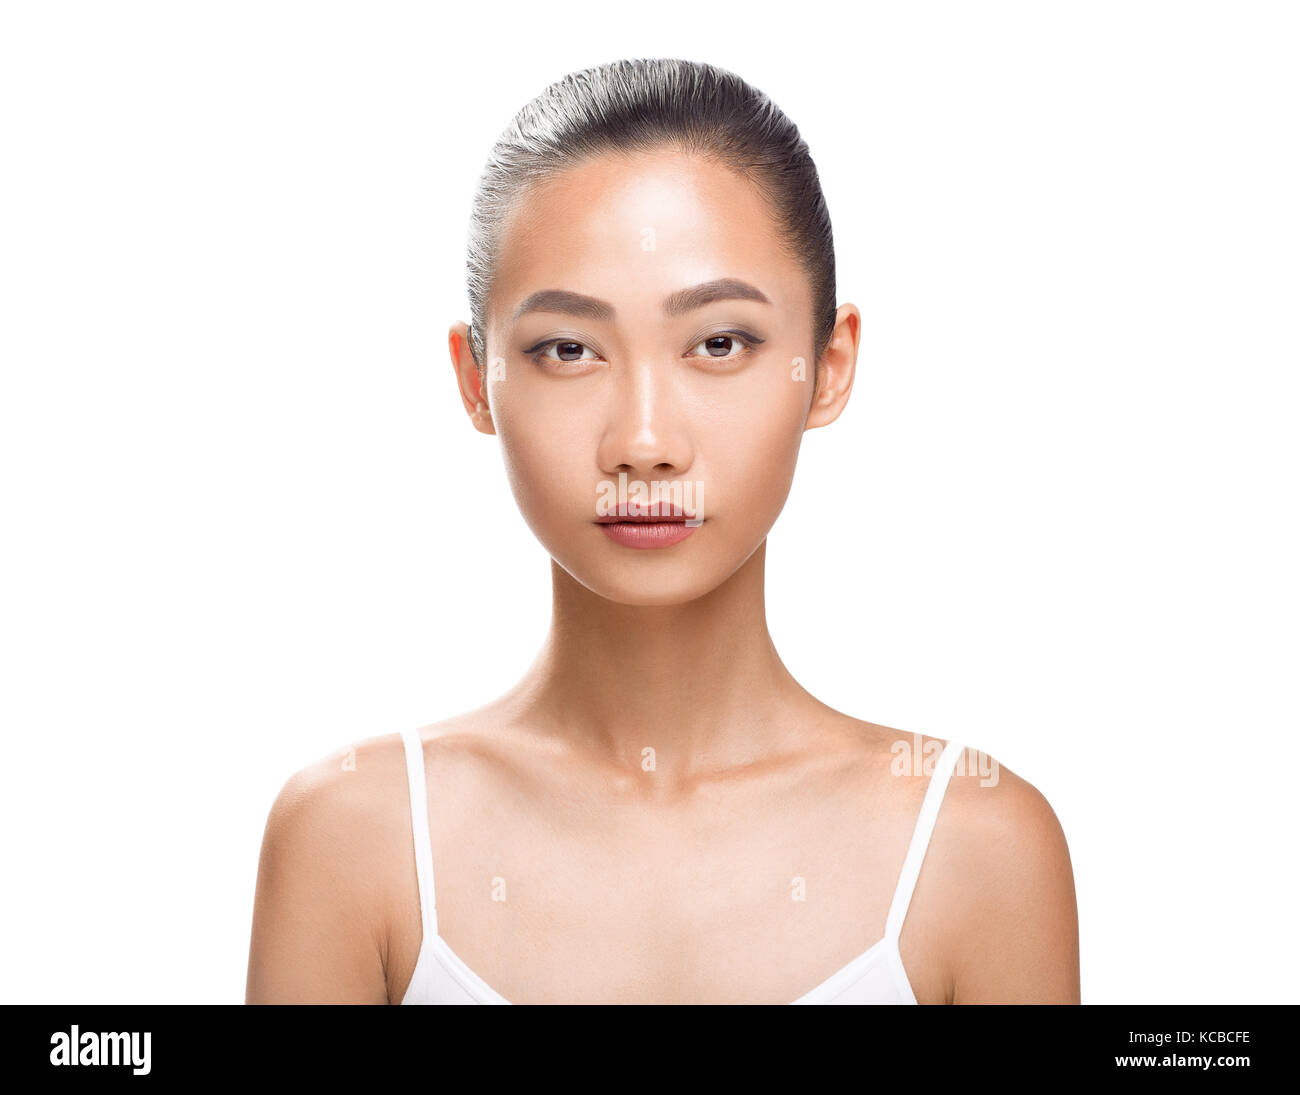 Beau modèle asiatique avec la peau bronzée parfaite et beauté visage. Jeune femme à la caméra. Studio portrait isolé sur fond blanc Banque D'Images